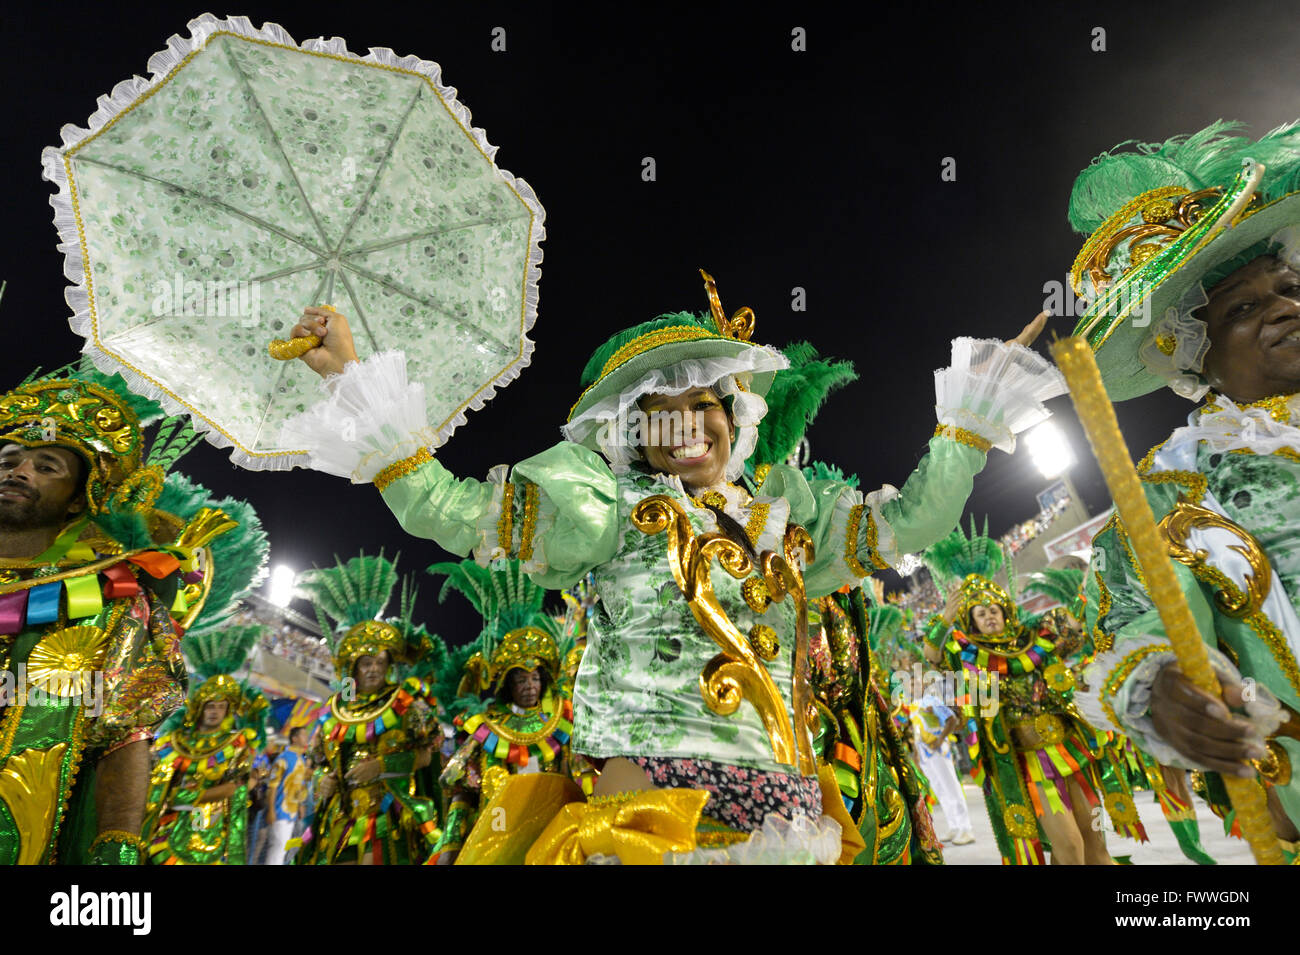 Femme en costume, défilé de l'école de samba Beija Flor de Nilópolis, Sambódromo, Rio de Janeiro, Brésil Banque D'Images